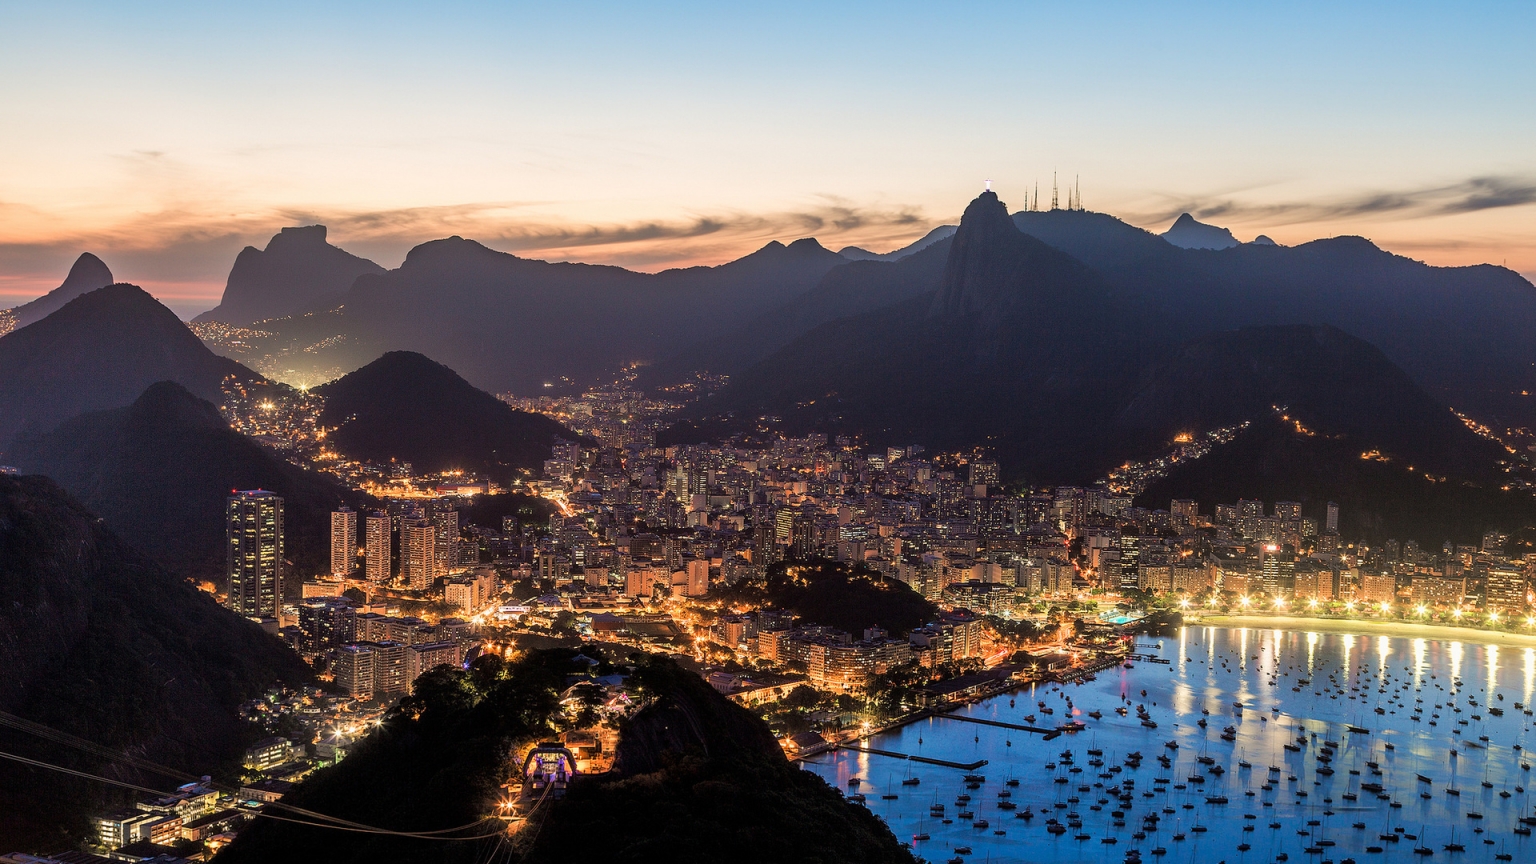 Rio de Janeiro for 1536 x 864 HDTV resolution